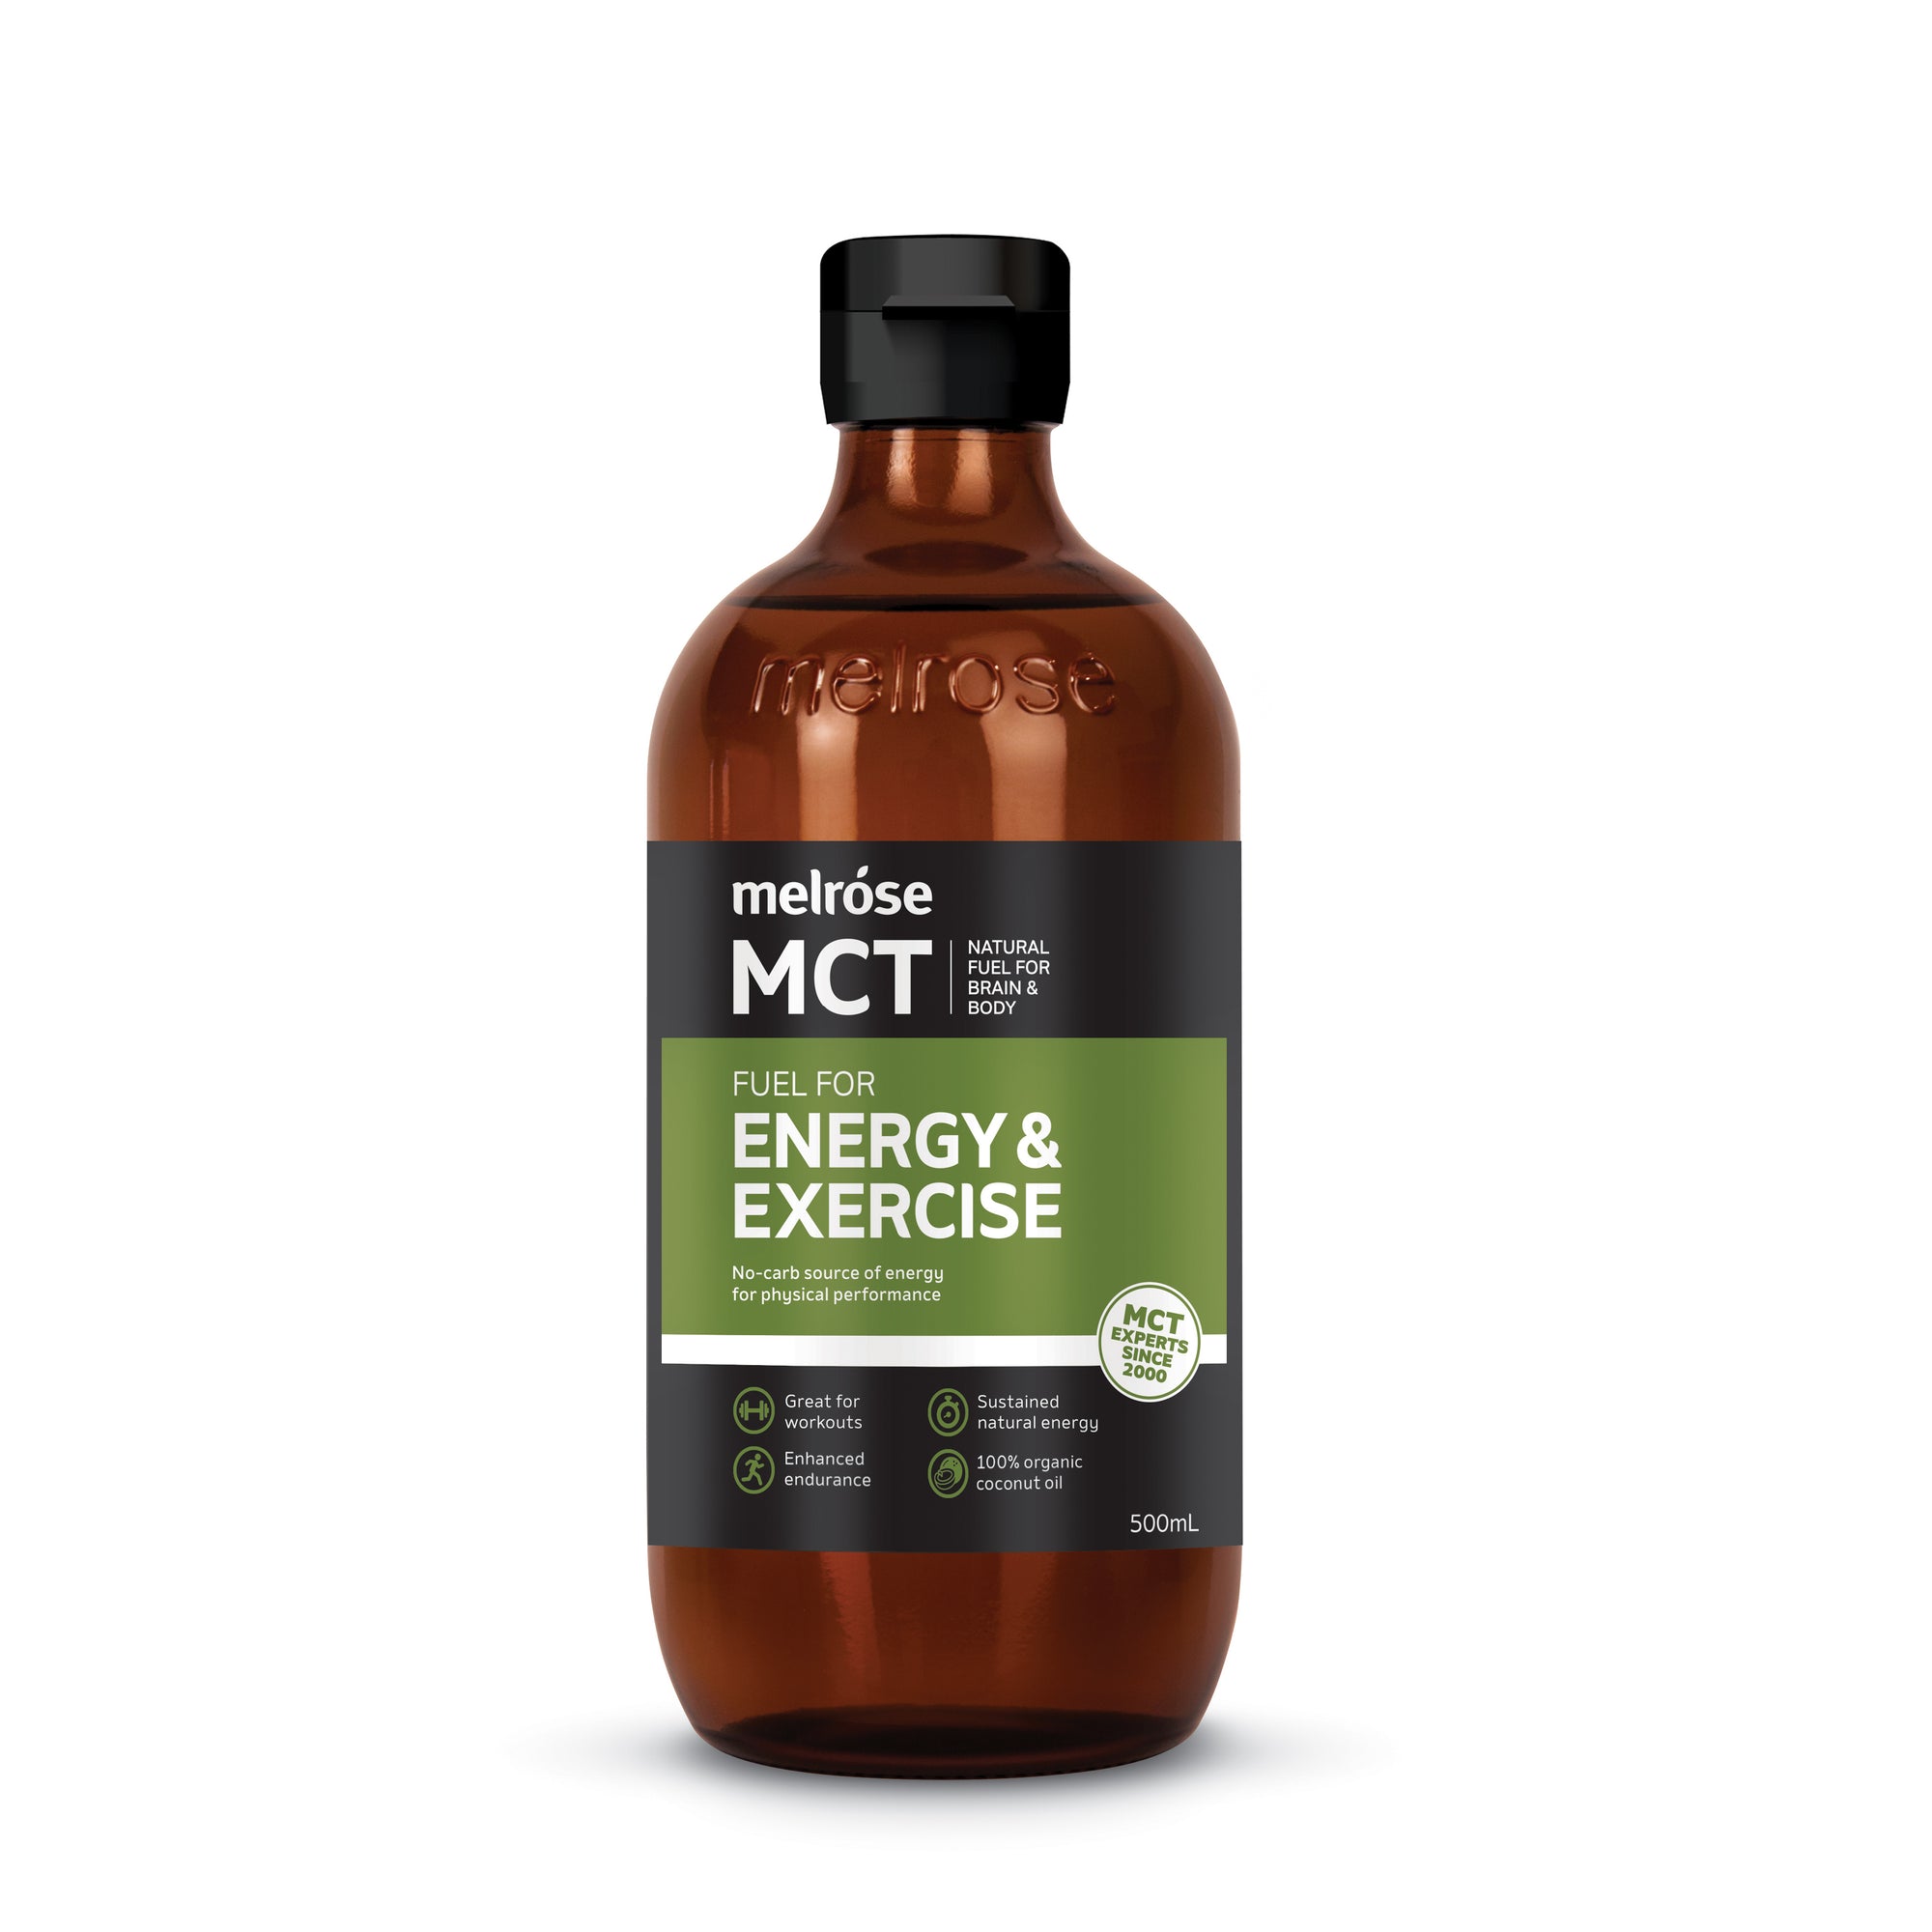 MELROSE MCT OIL FOR EXERCISE